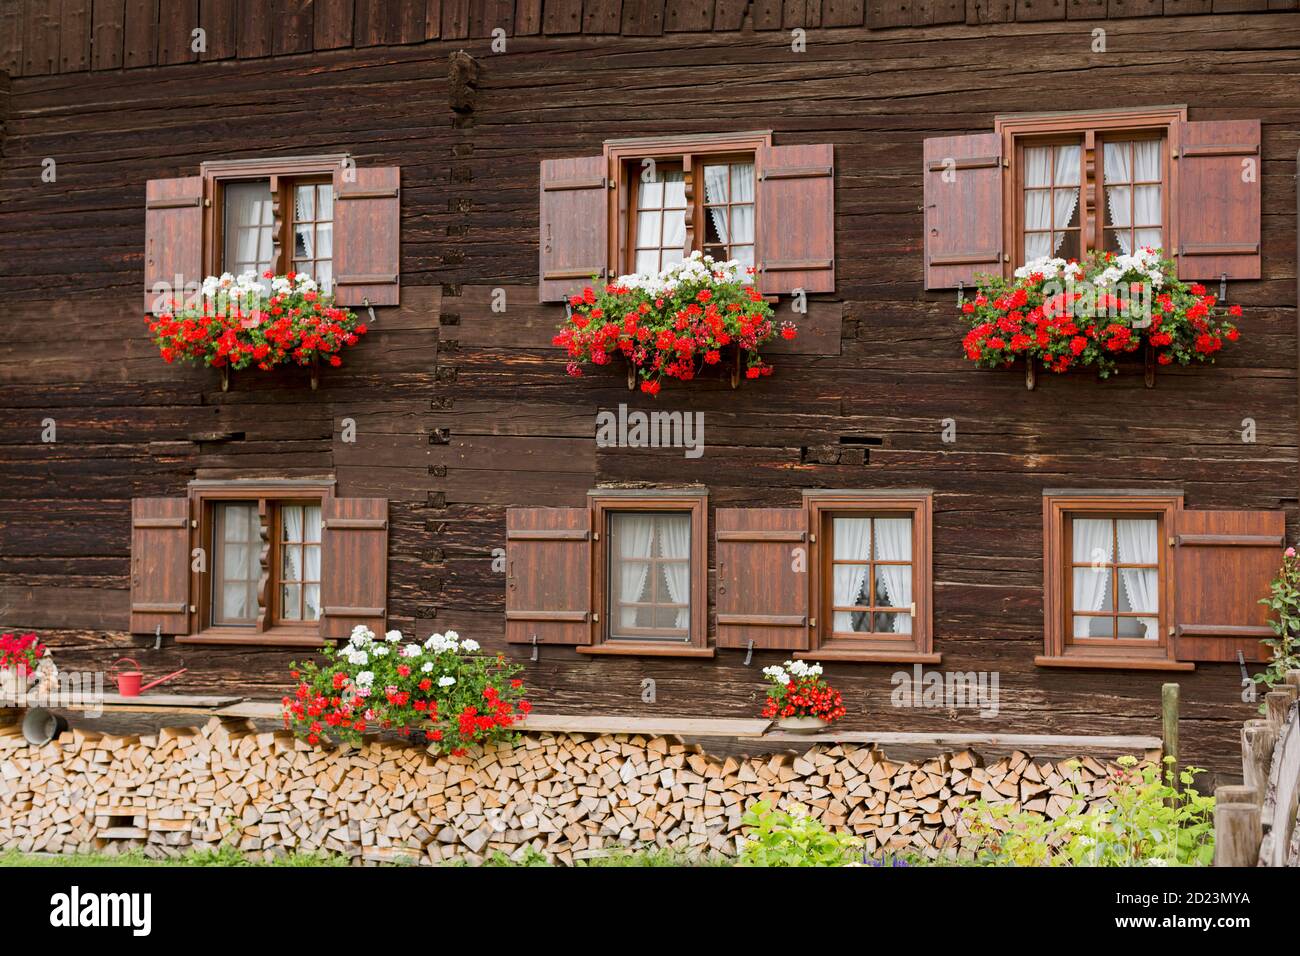 Oberstdorf, Bauernhaus, Fassade, Fenster, Blumen, Bayern, Allemagne Banque D'Images